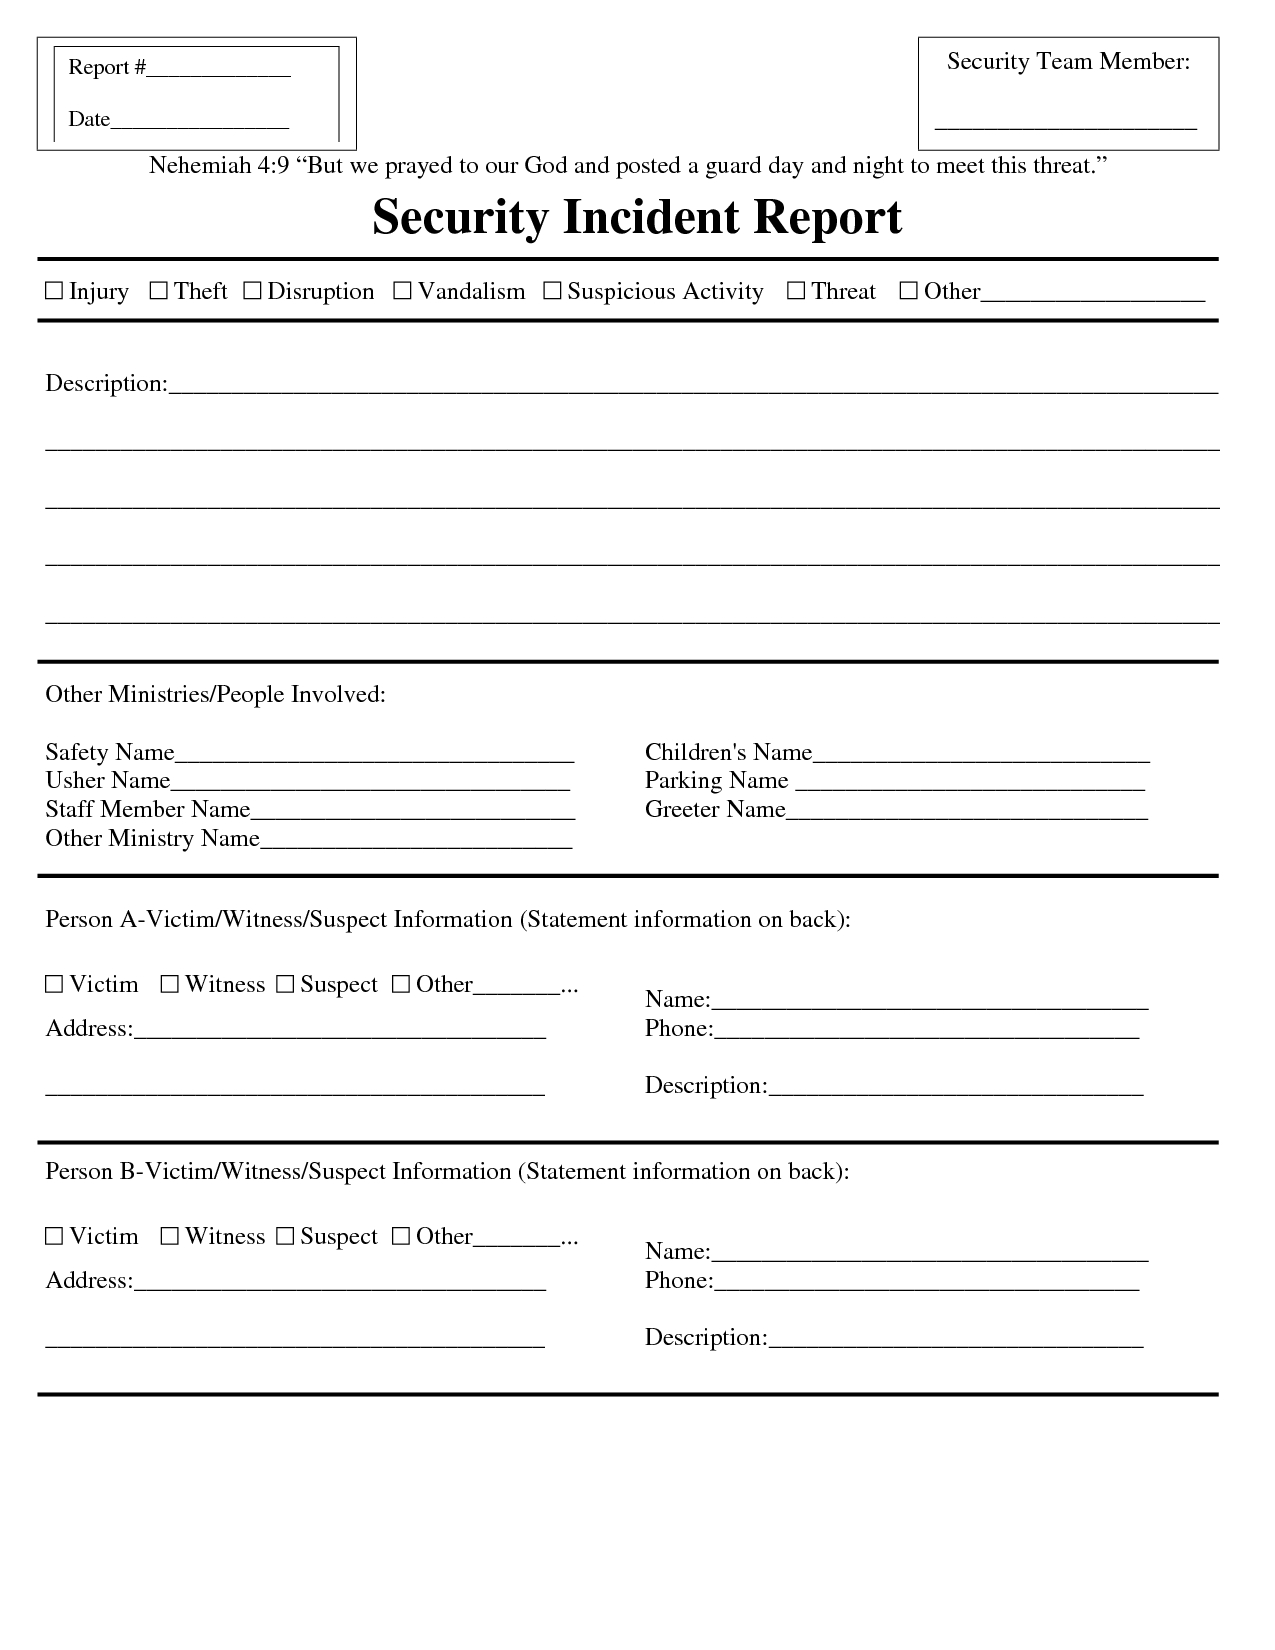 Premium Blank Security Incident Report Template Sample For Incident Report Template Microsoft